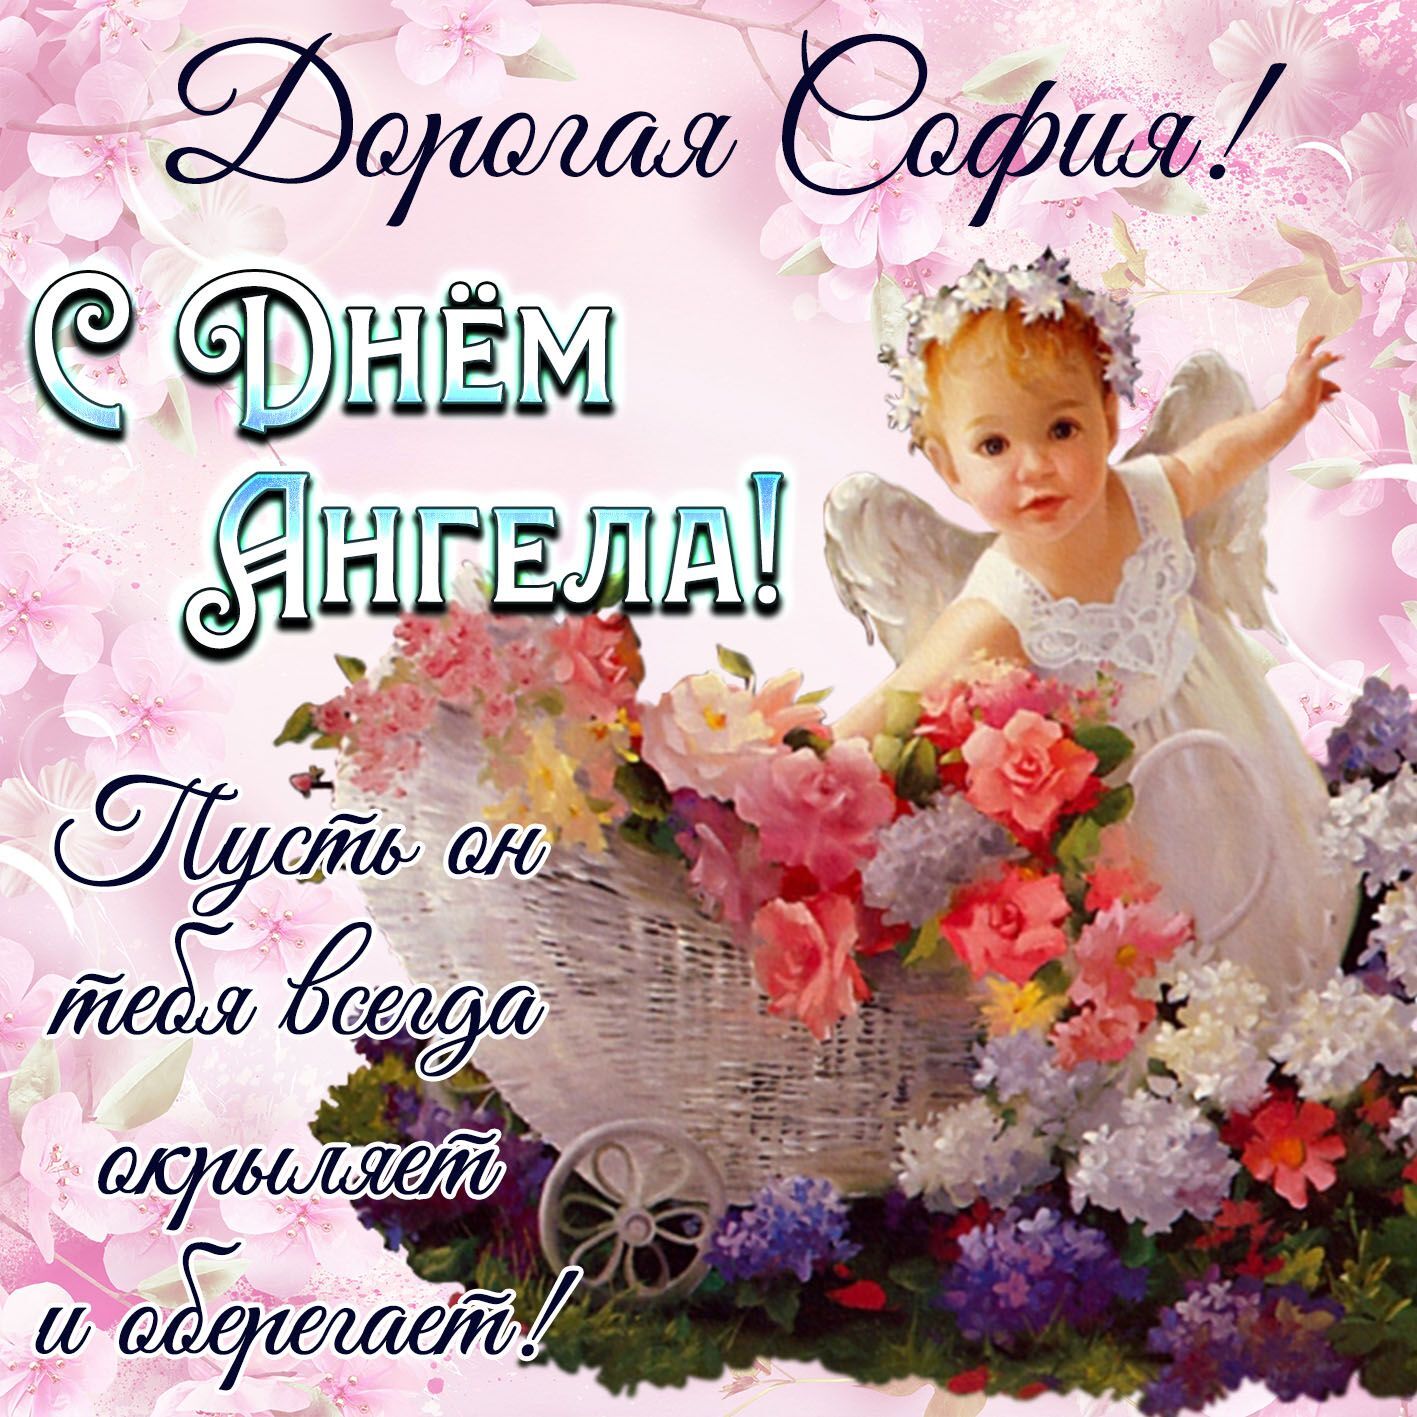 День ангела Софии 28 февраля: картинки и открытки для поздравления с праздником